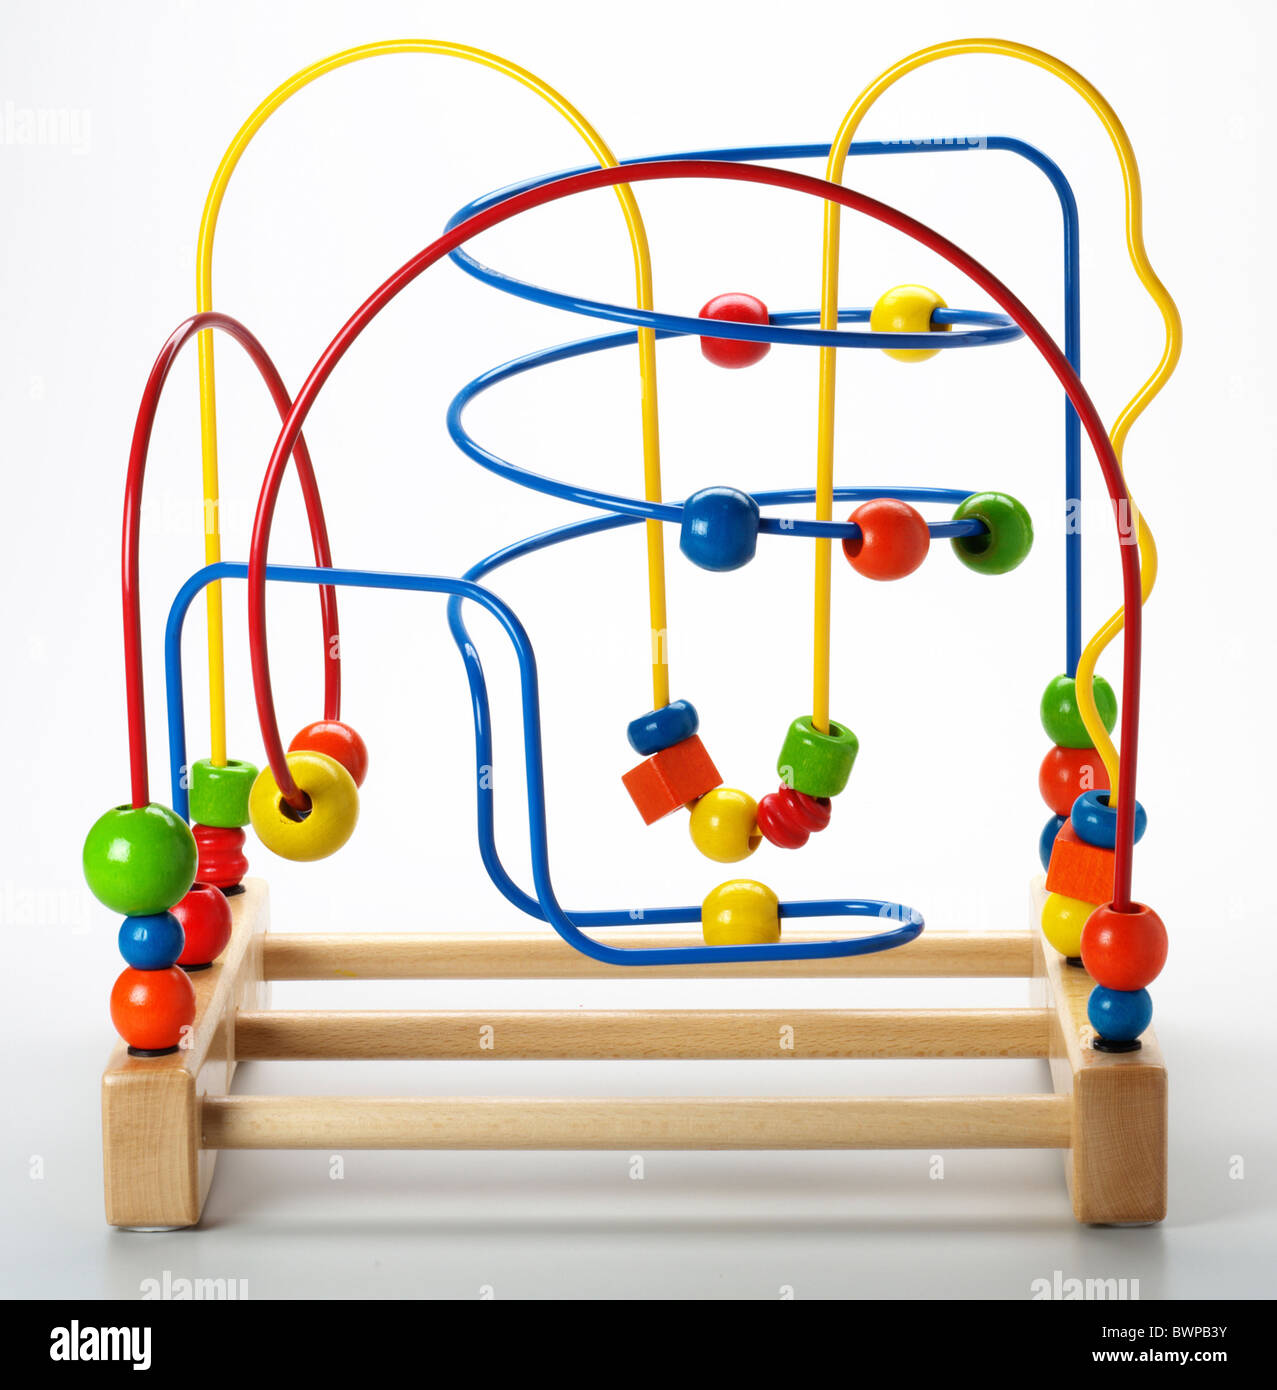 Bead puzzle toy Stock Photo